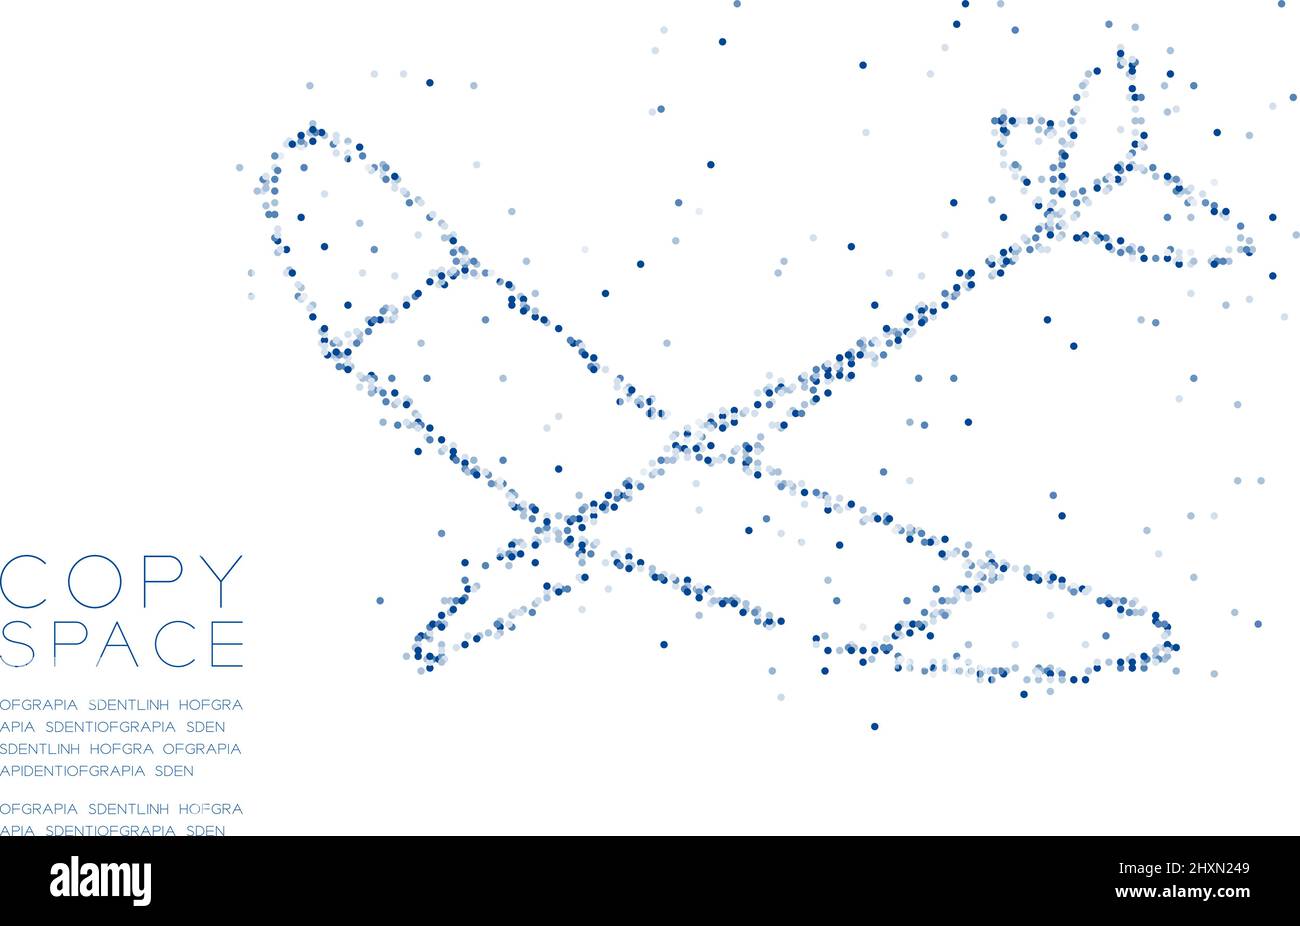 Abstrakt Geometrischer Kreis Punkt Molekül Partikelmuster Glider Ebene Form, VR-Technologie Business Reise Konzept Design blau Farbe Illustration isola Stock Vektor